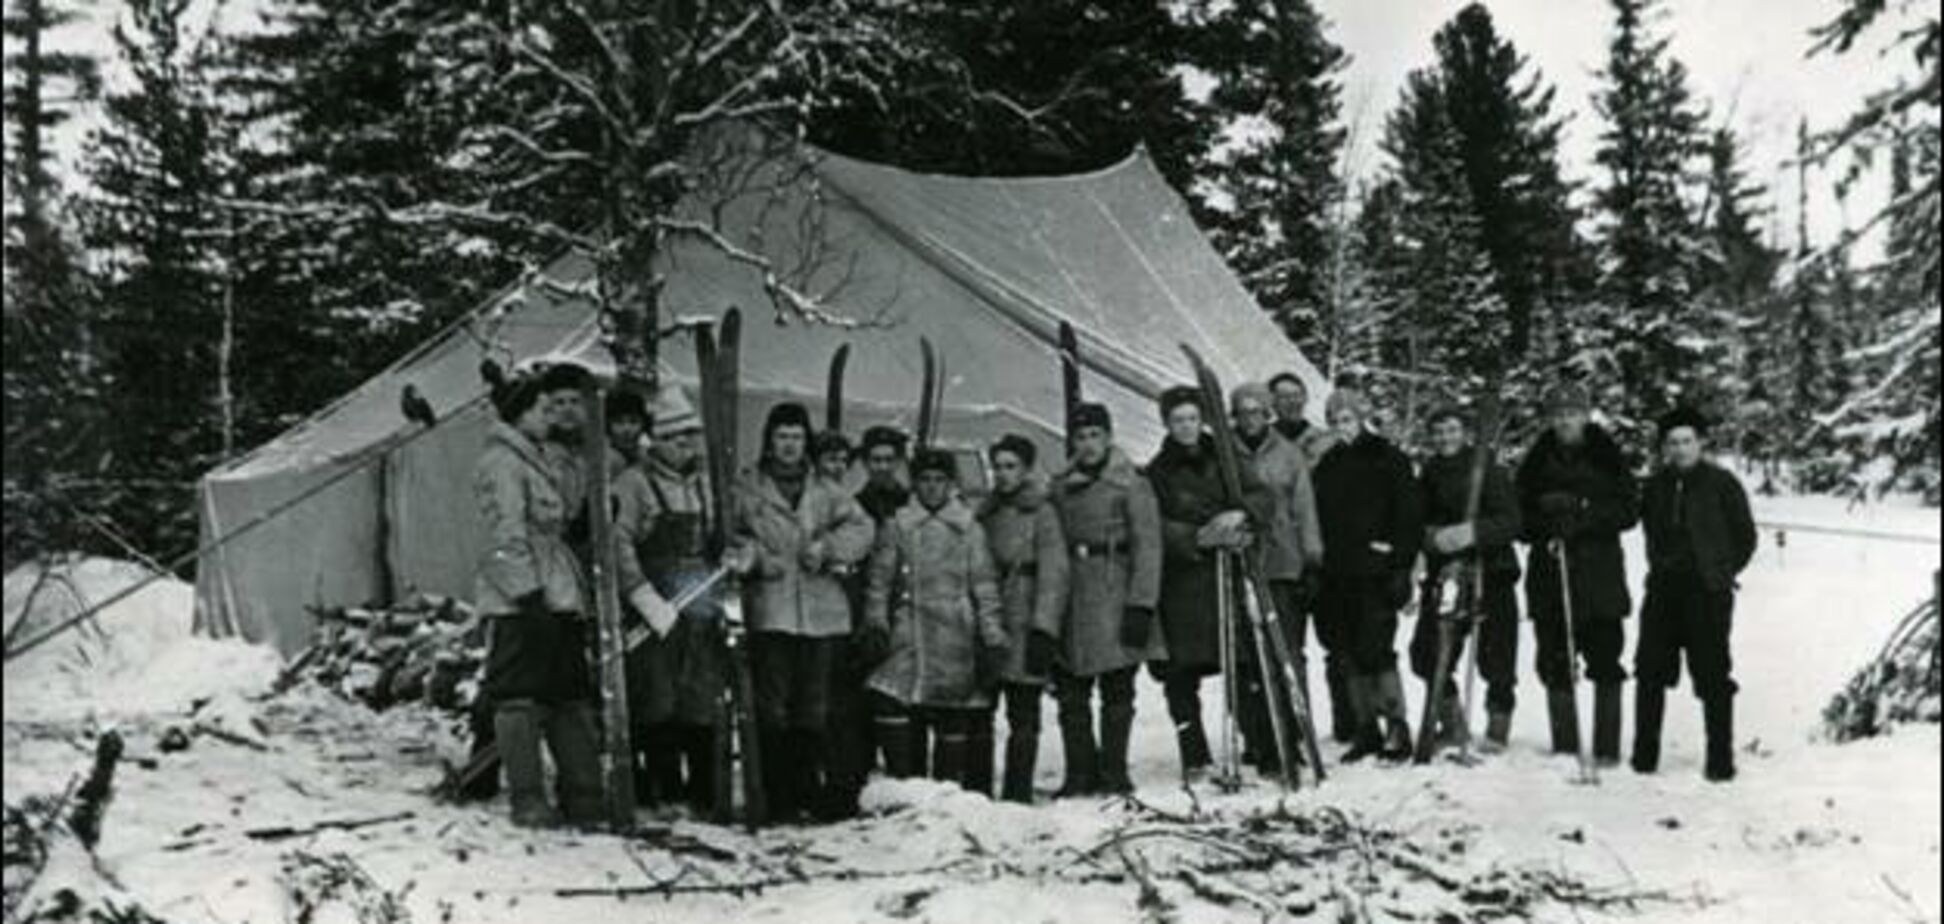   Голые бежали по снегу и резали палатки: появились новые нюансы в гибели группы Дятлова